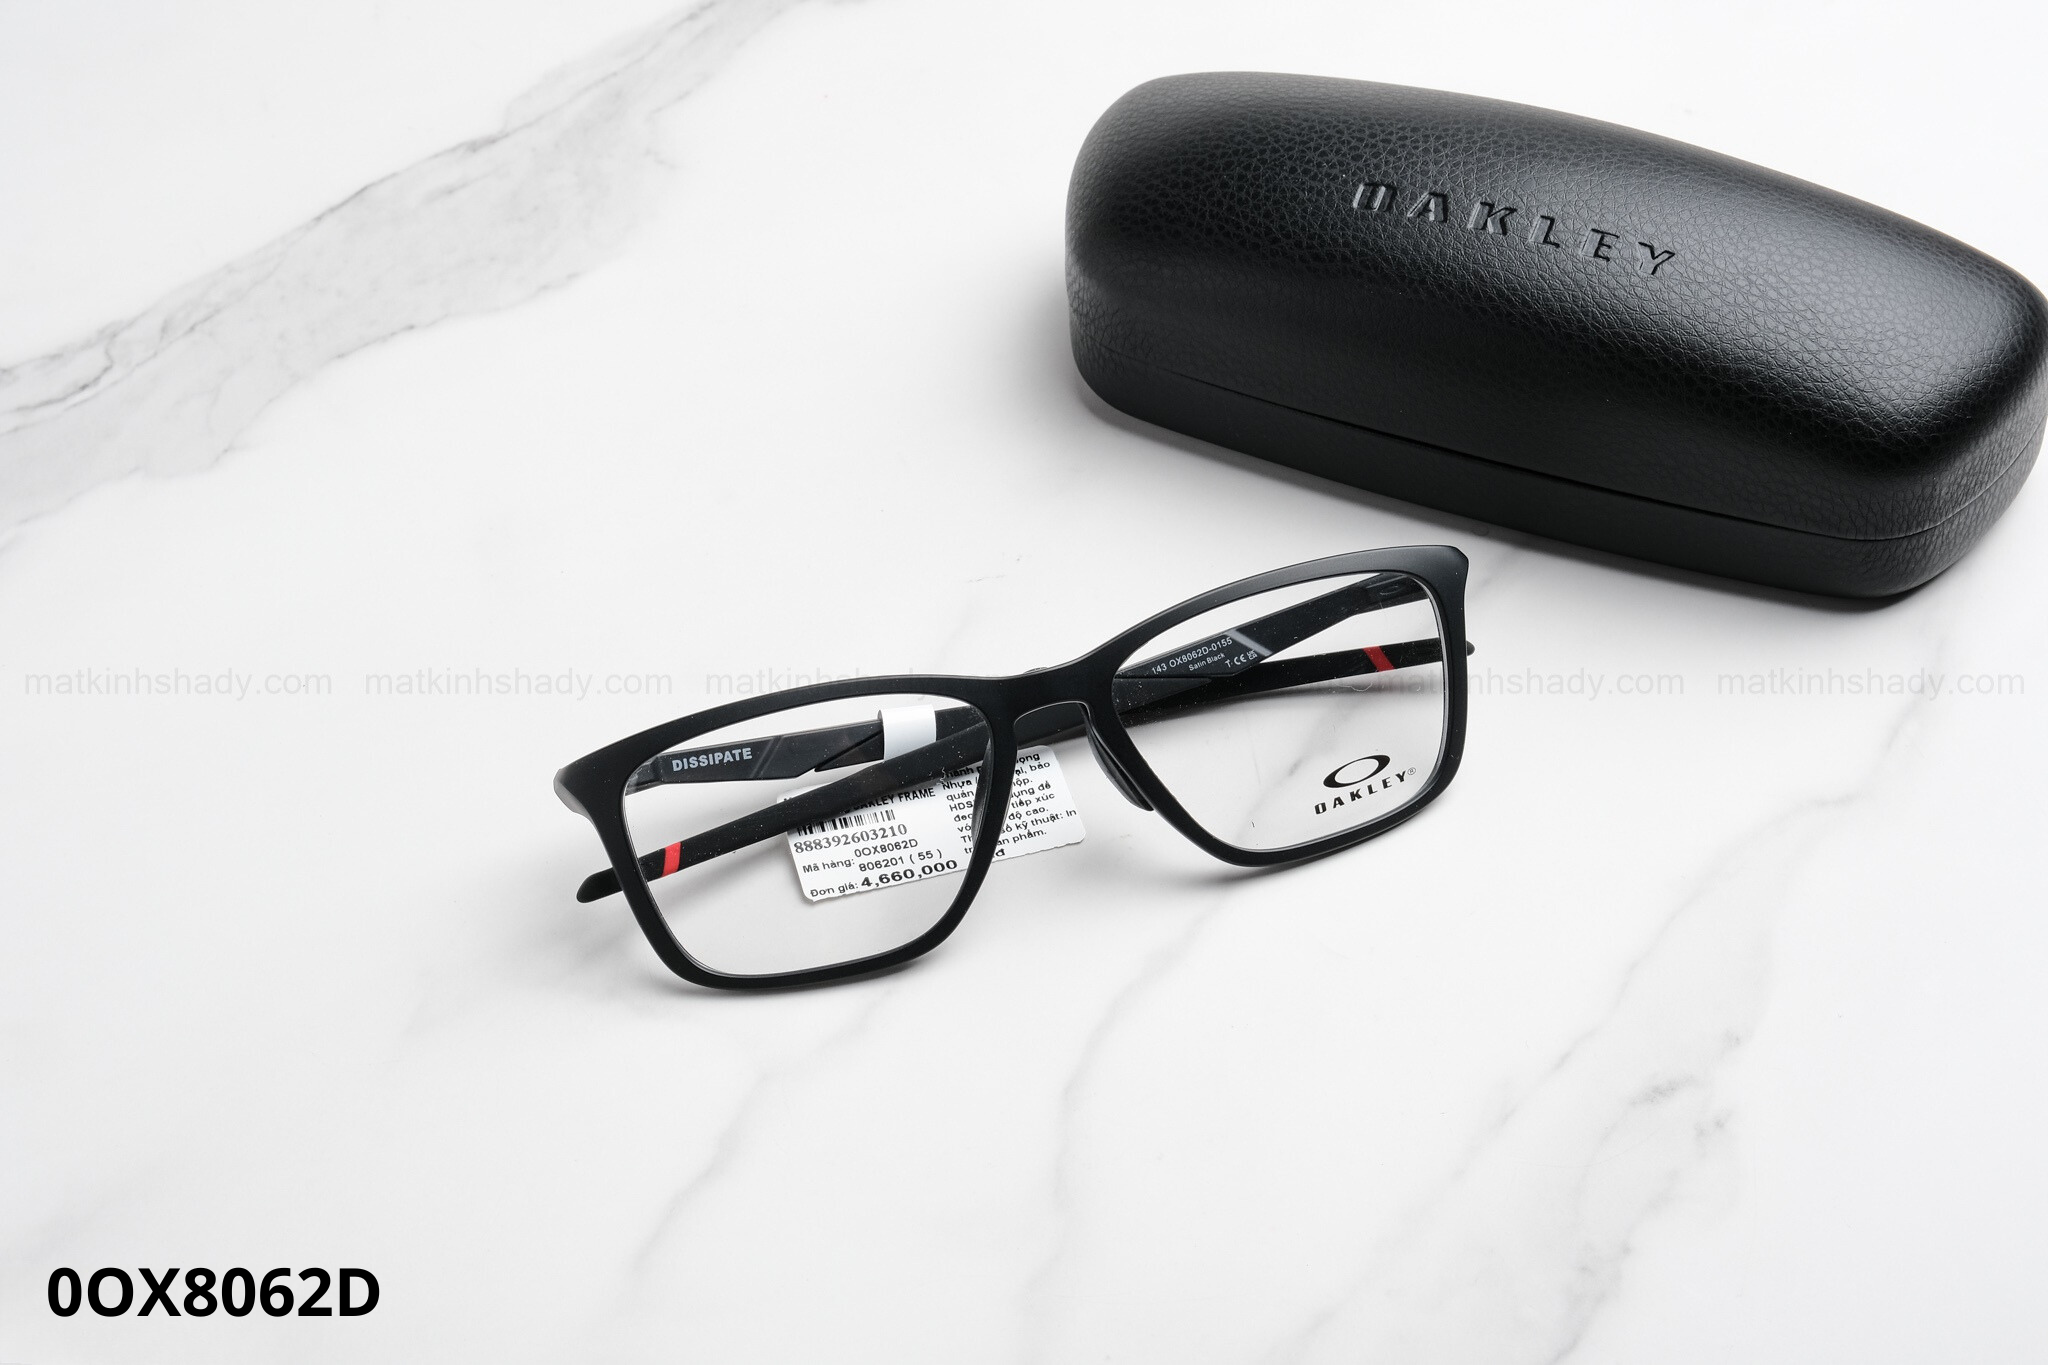  Oakley Eyewear - Glasses - 0OX8062 